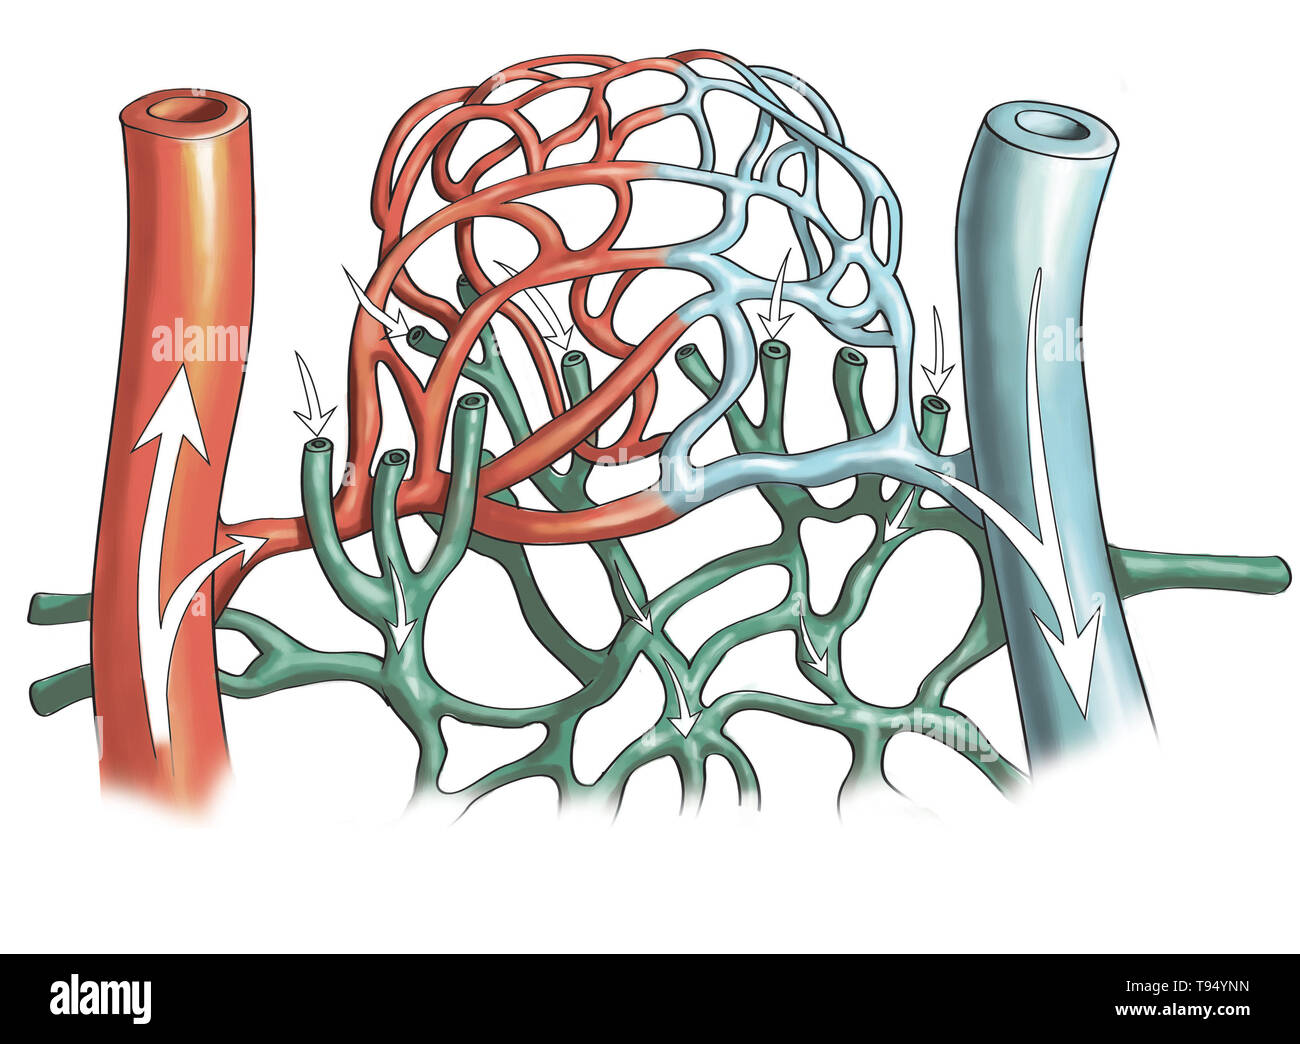 Ilustración de los vasos sanguíneos, arteria y redes capilares en la pierna. Foto de stock